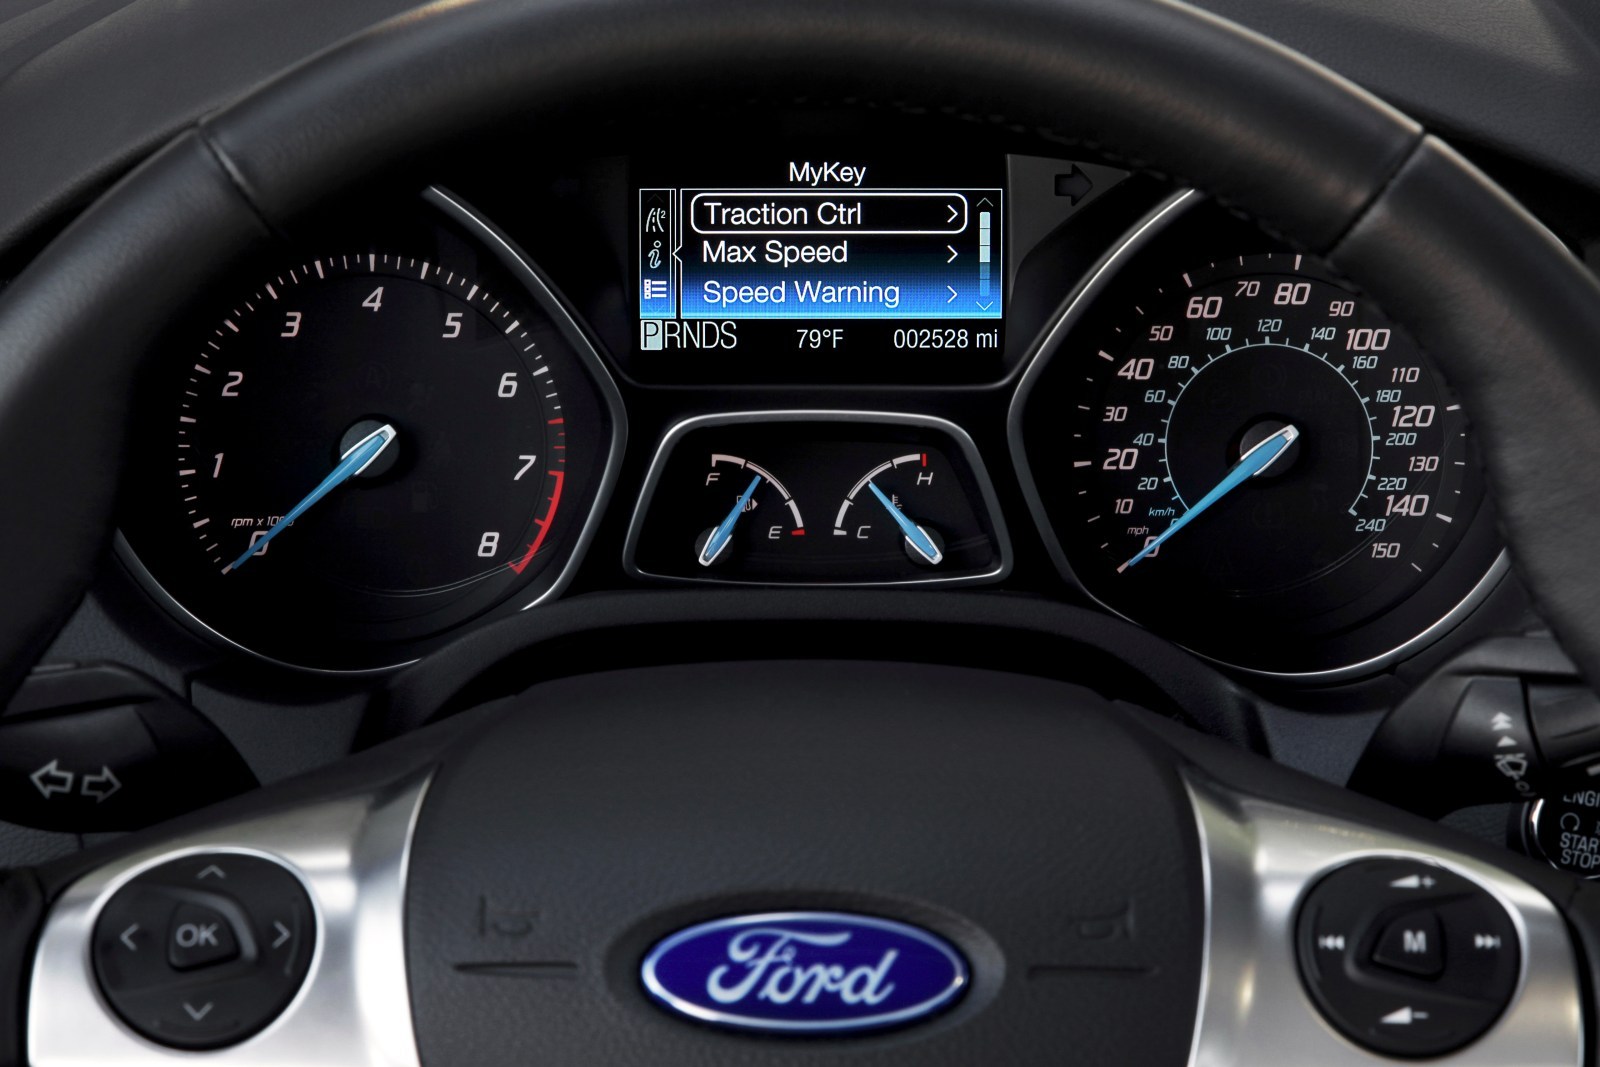 Noul sistem Ford MyKey permite controlul anumitor functii ale masinii de catre parinti